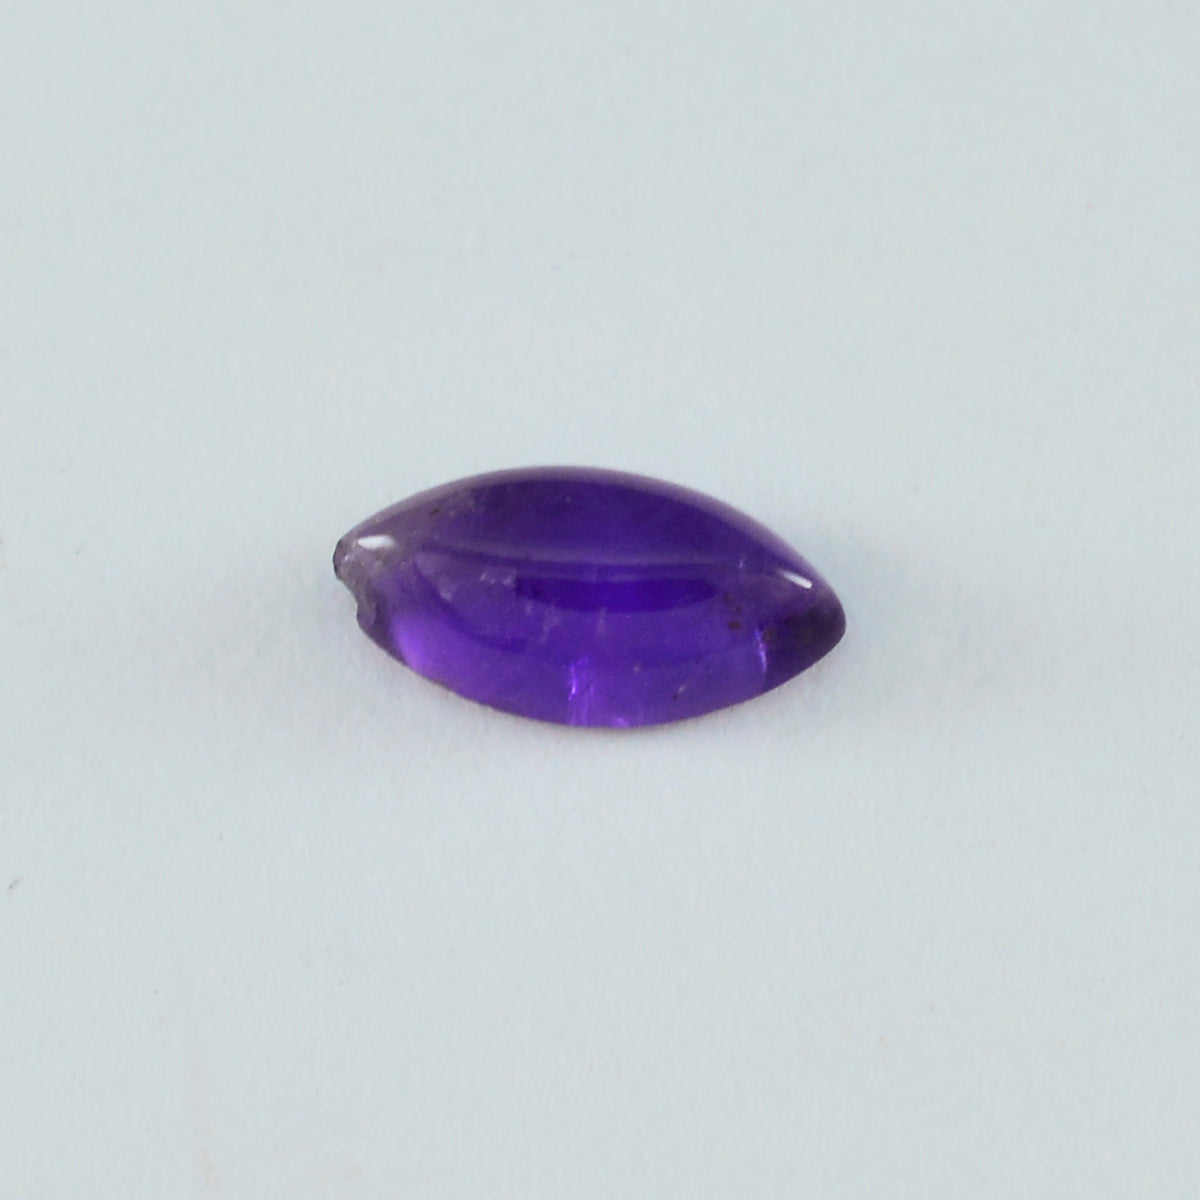 Riyogems 1PC Purple Amethyst Cabochon 7x14 mm Marquise Shape A Quality Loose Gem